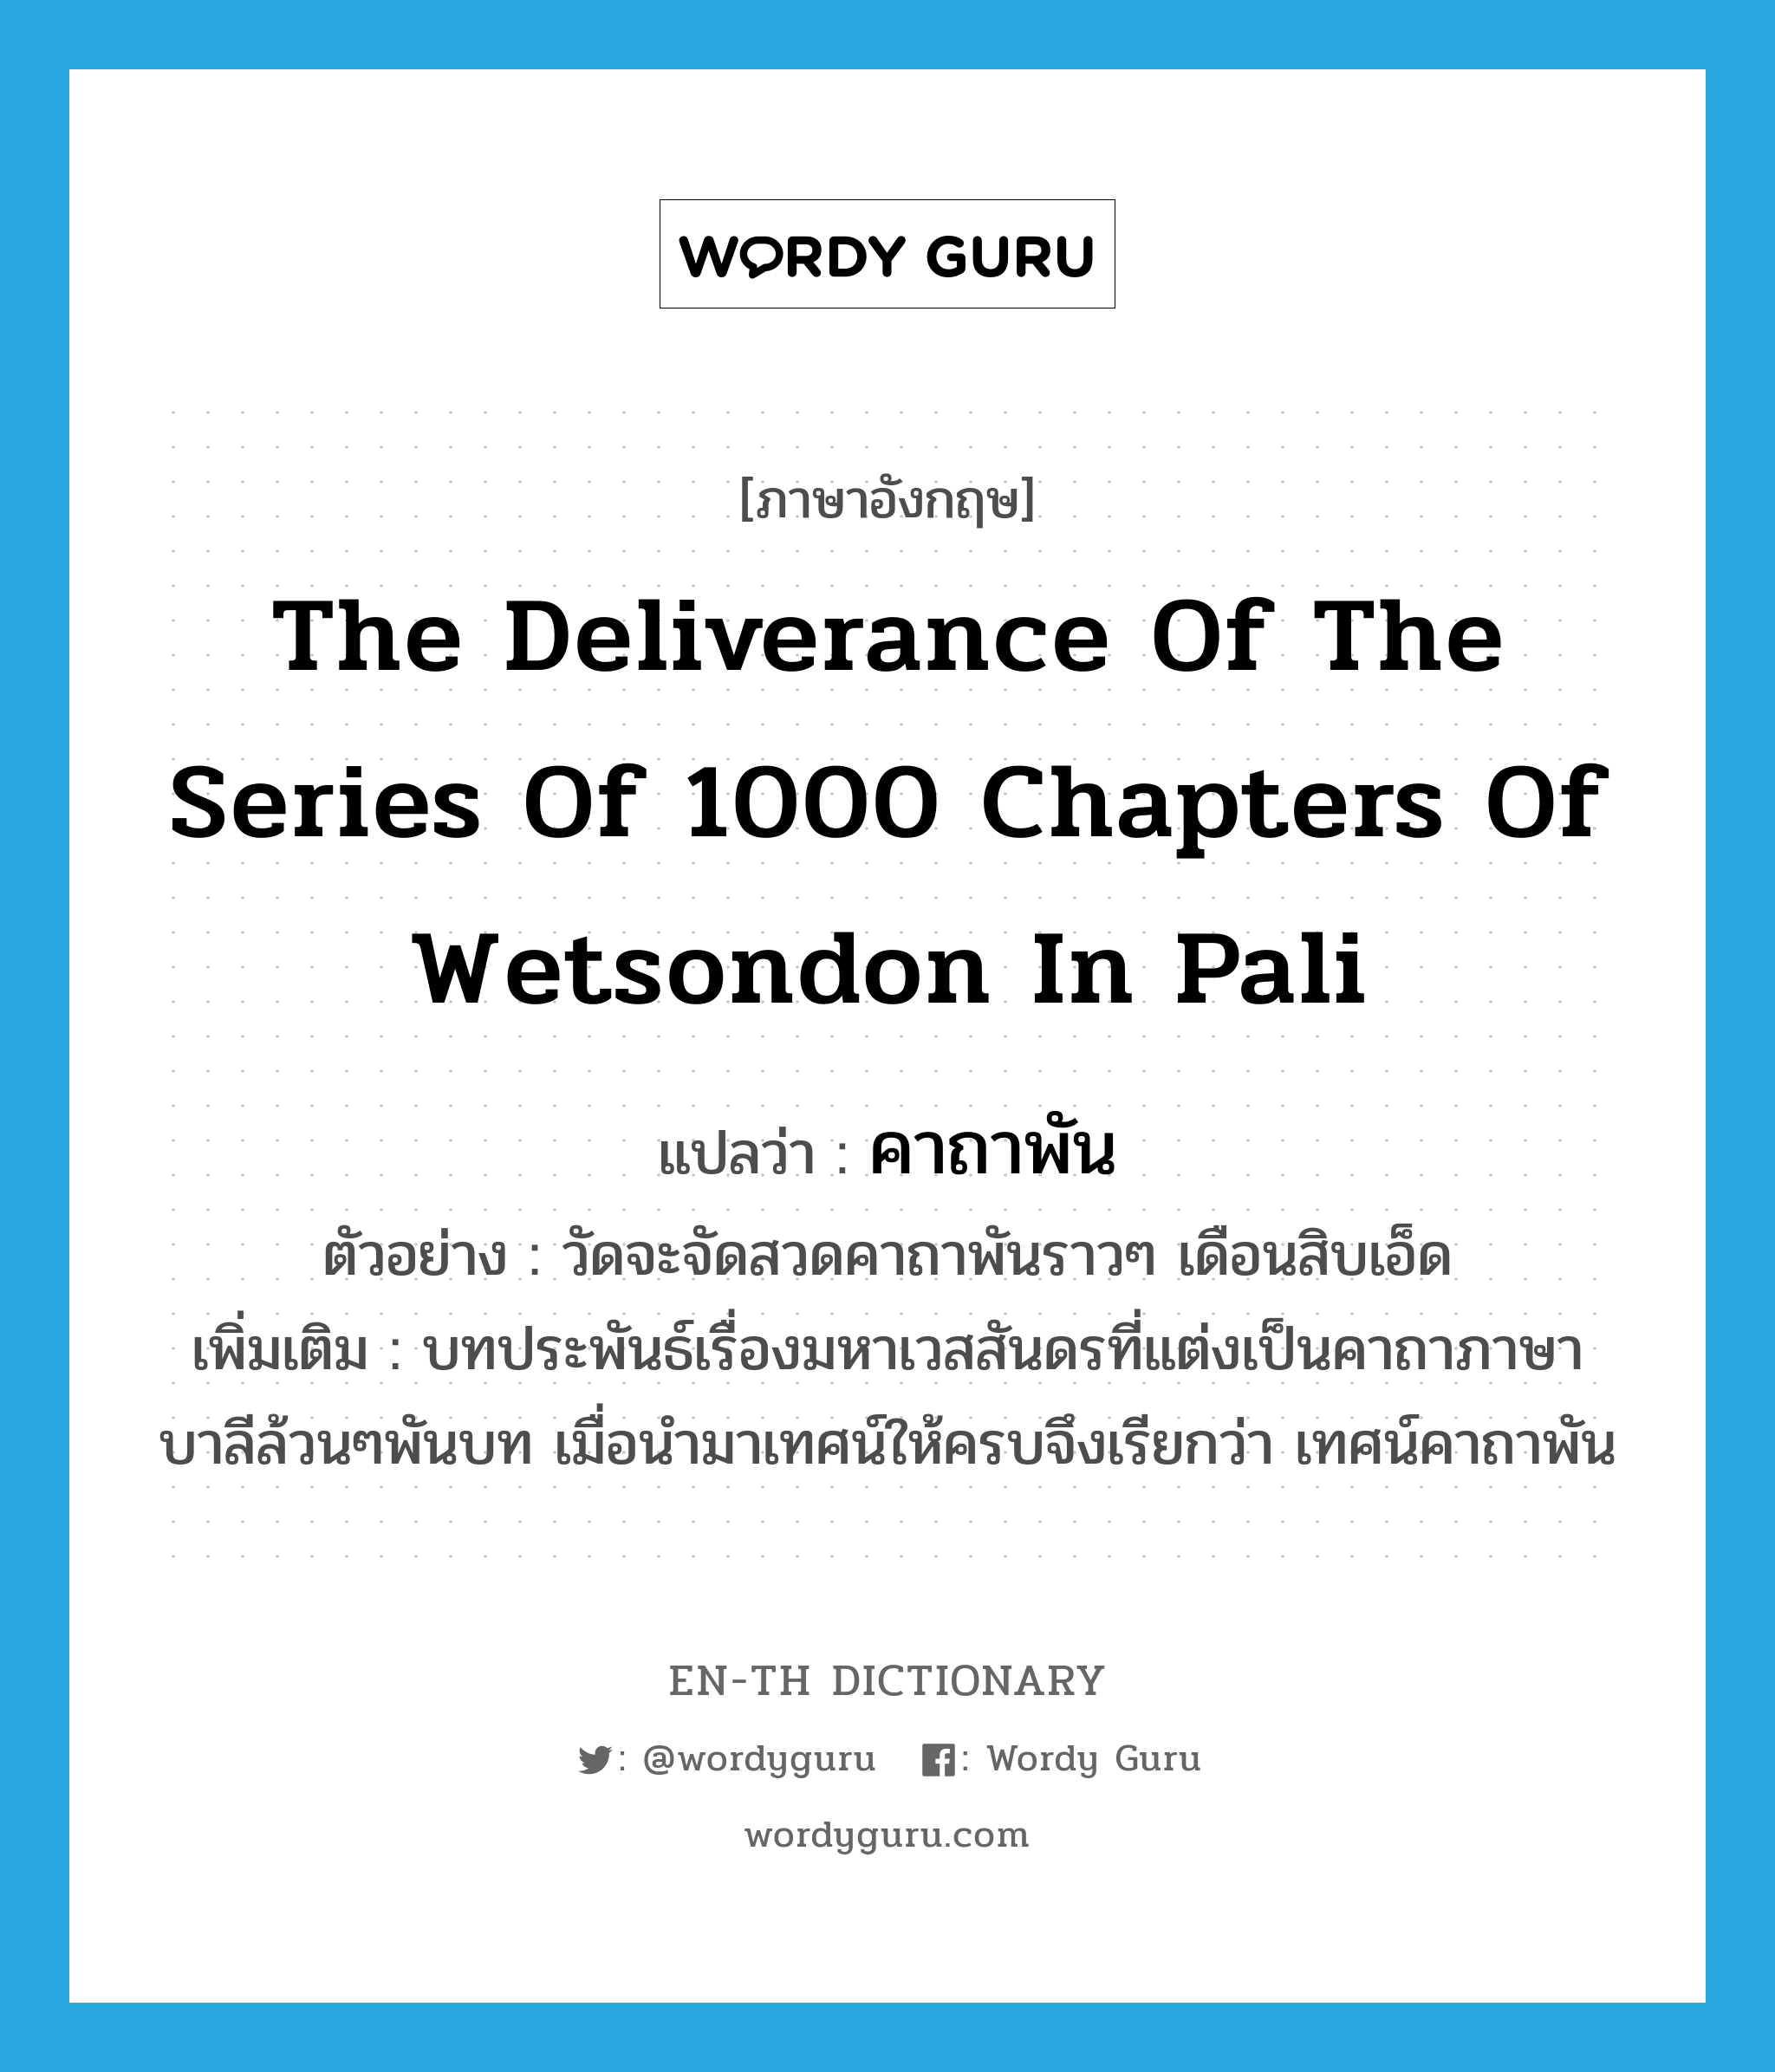 the deliverance of the series of 1000 chapters of Wetsondon in Pali แปลว่า?, คำศัพท์ภาษาอังกฤษ the deliverance of the series of 1000 chapters of Wetsondon in Pali แปลว่า คาถาพัน ประเภท N ตัวอย่าง วัดจะจัดสวดคาถาพันราวๆ เดือนสิบเอ็ด เพิ่มเติม บทประพันธ์เรื่องมหาเวสสันดรที่แต่งเป็นคาถาภาษาบาลีล้วนๆพันบท เมื่อนำมาเทศน์ให้ครบจึงเรียกว่า เทศน์คาถาพัน หมวด N